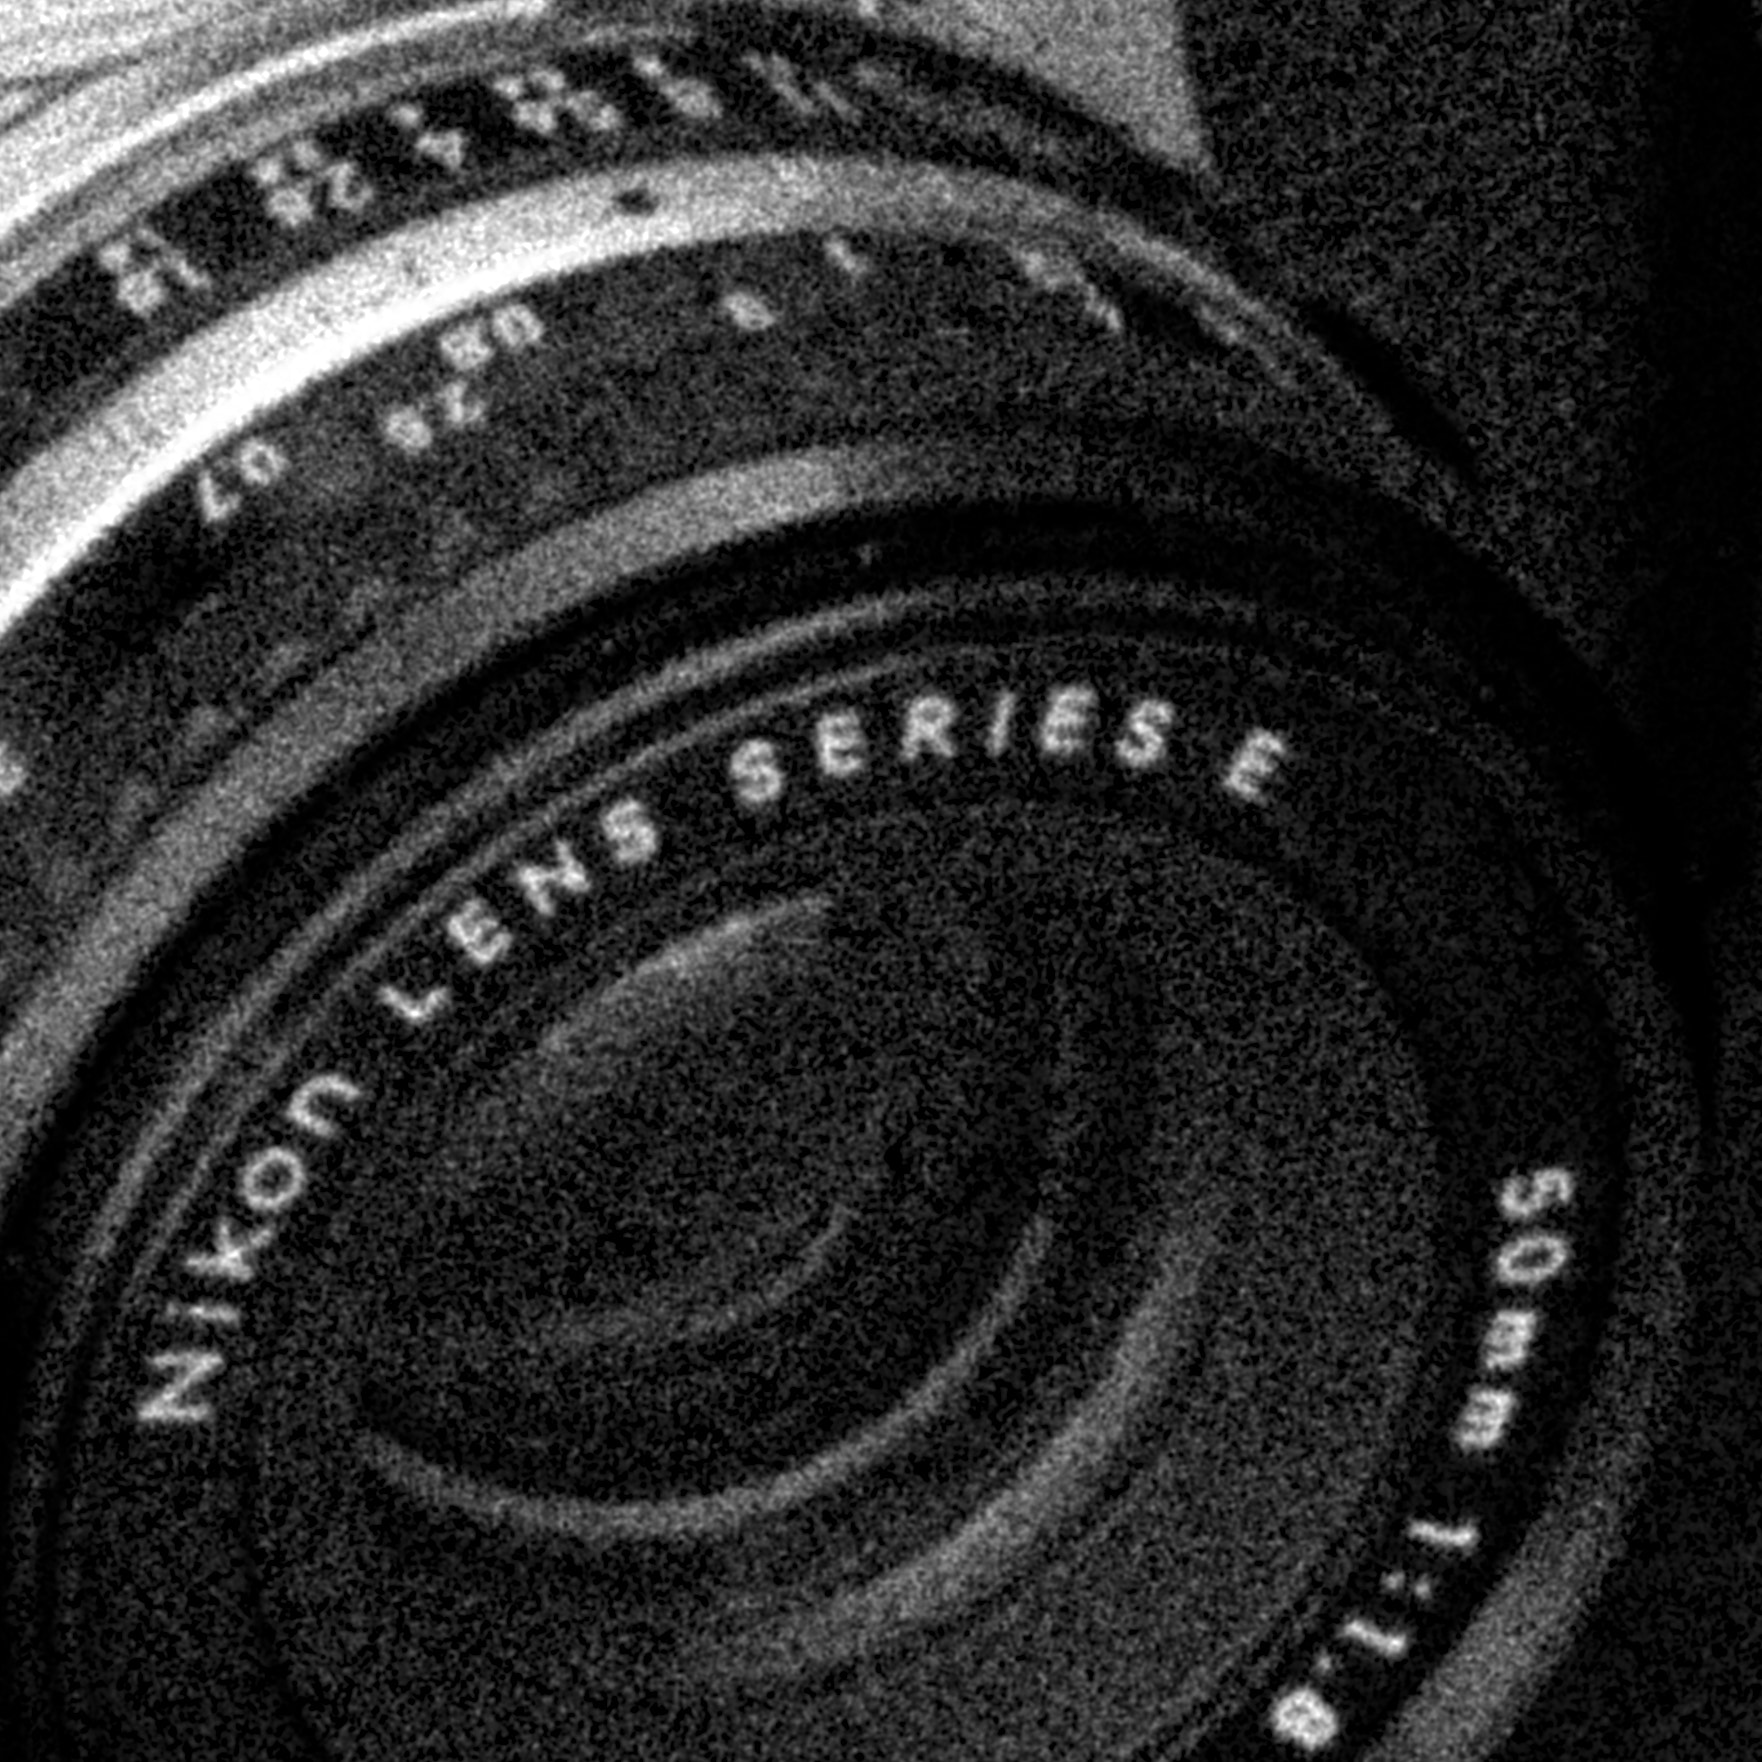 Nikon D3100 + AF Zoom-Nikkor 28-105mm f/3.5-4.5D IF sample photo. Nikon lens with grain photography